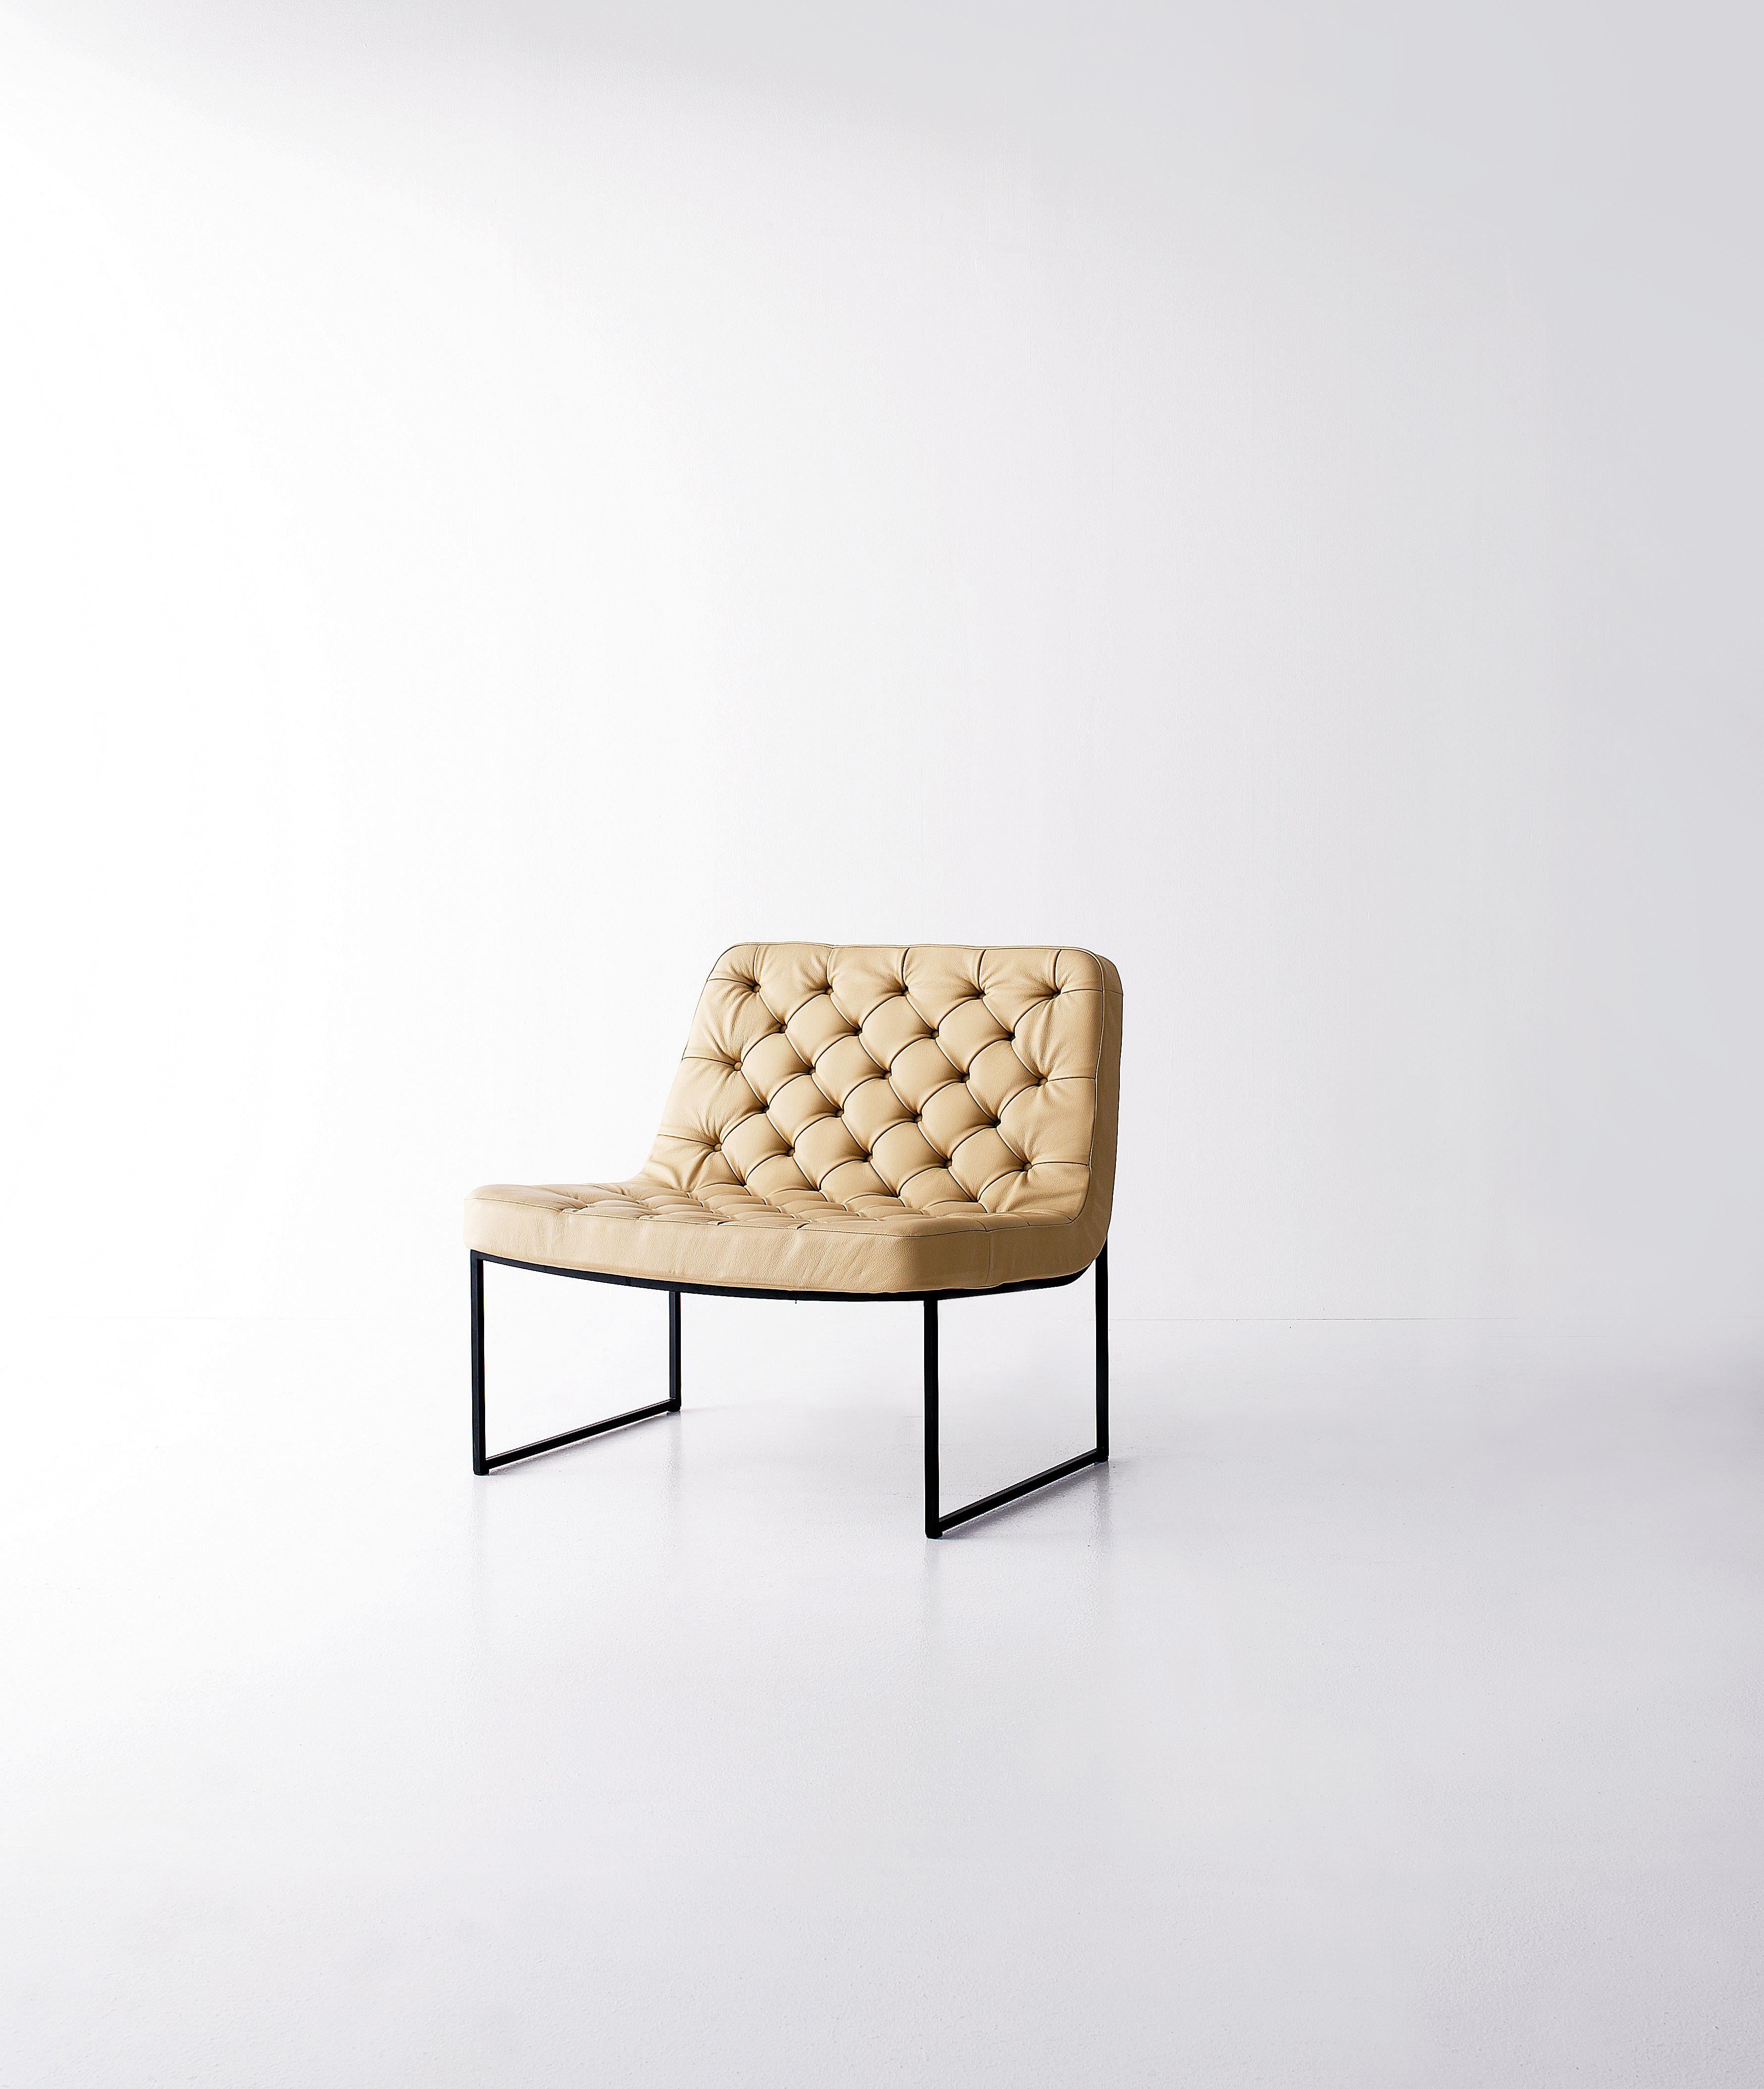 Sella est un fauteuil où se mêlent modernité et raffinement, pour créer un classique intemporel.

Informations complémentaires :
Matériaux : Assise et dossier rembourrés avec patins en métal laqué noir et en nylon noir de protection
Couleur :